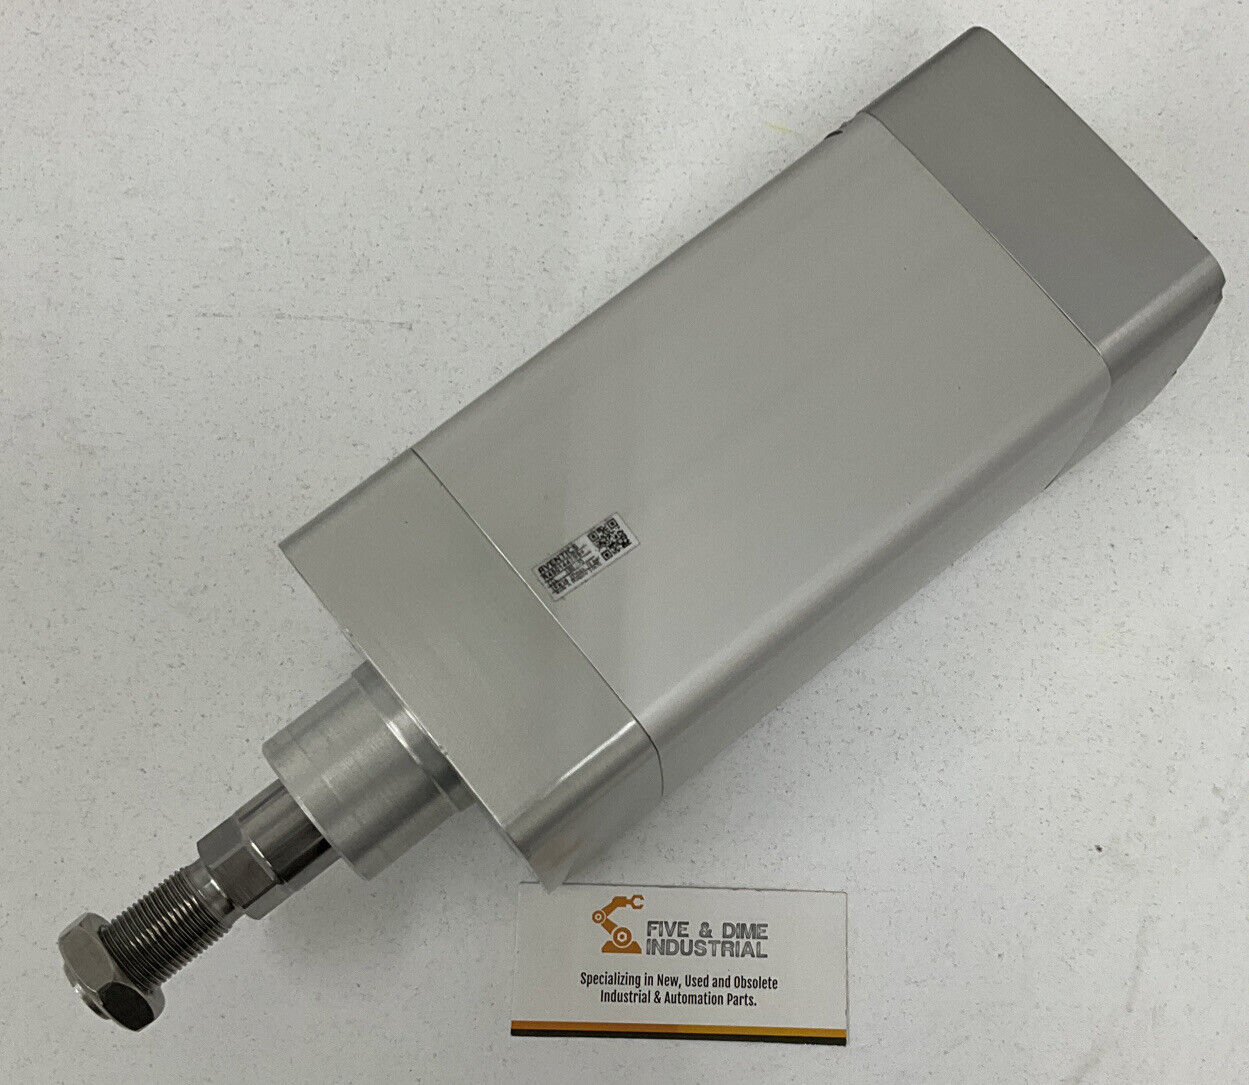 Bosch Aventics R480144799 Pneumatic Cylinder (OV115)